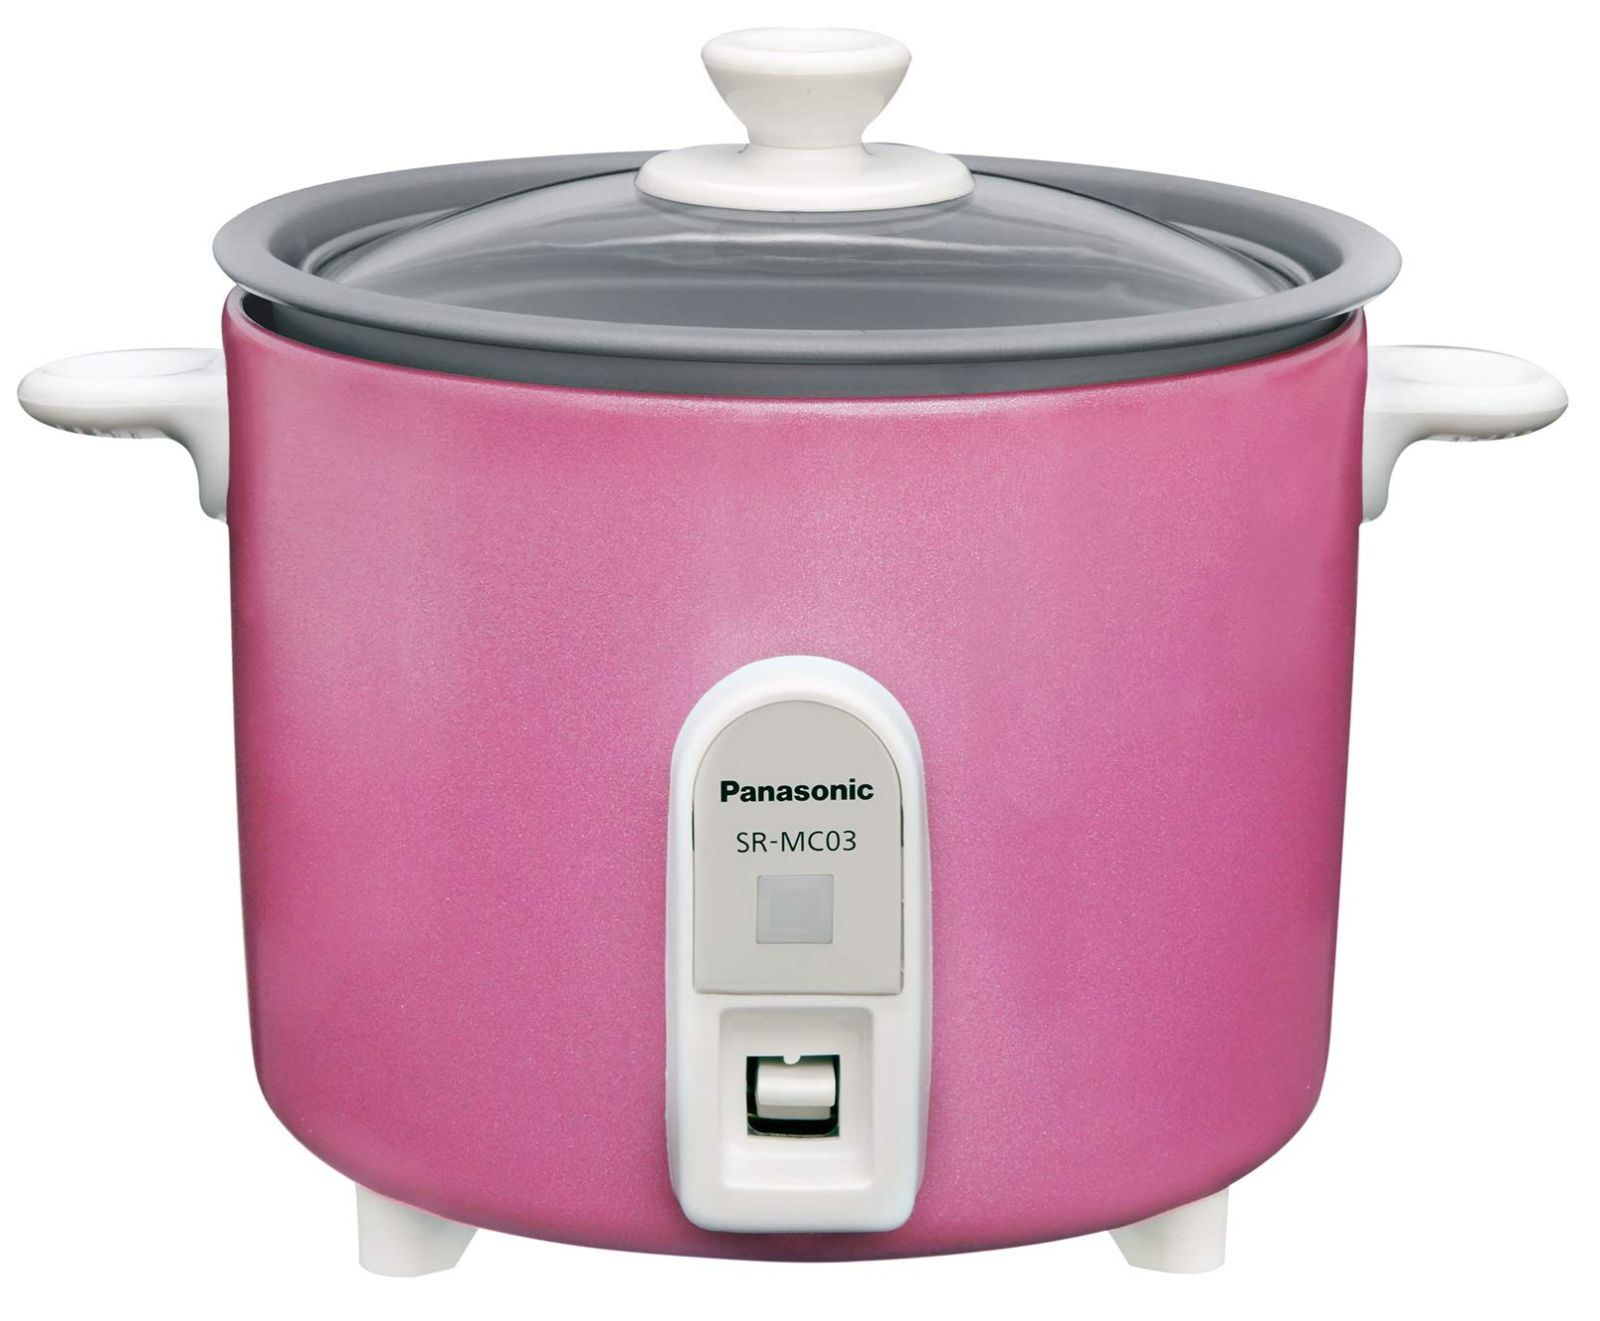 低価格の 炊飯器 1.5合 パナソニック 1人用炊飯器 自動調理鍋 ミニクッカー ピンク SR-MC3-P 9299.43円 生活家電 